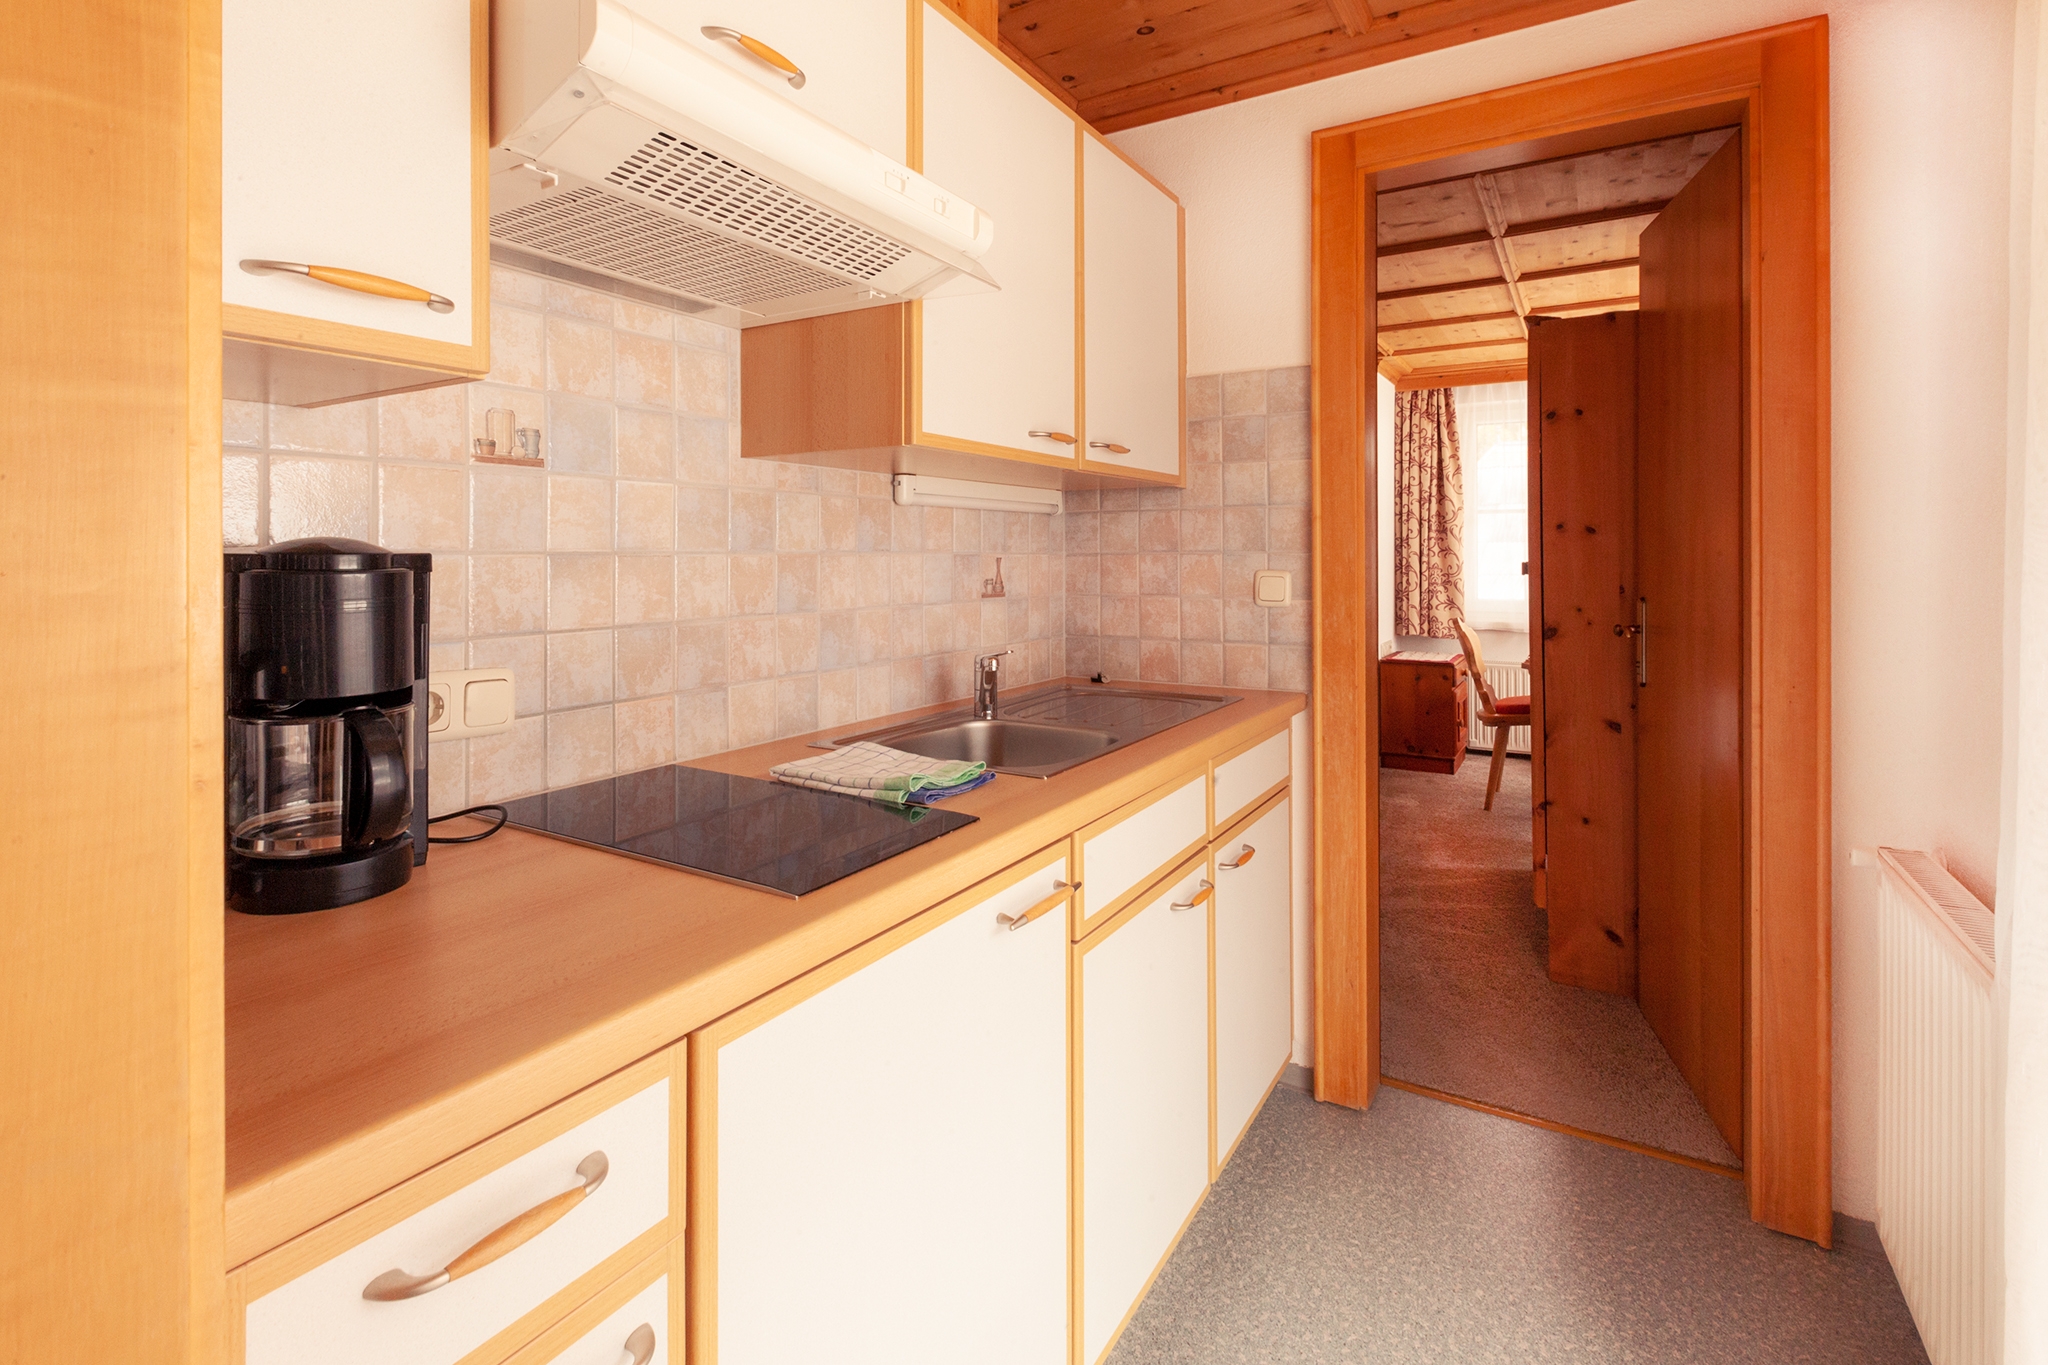 Edelweißhof Appartements: 2 Doppelzimmer für 4 Personen - Küchenzeile